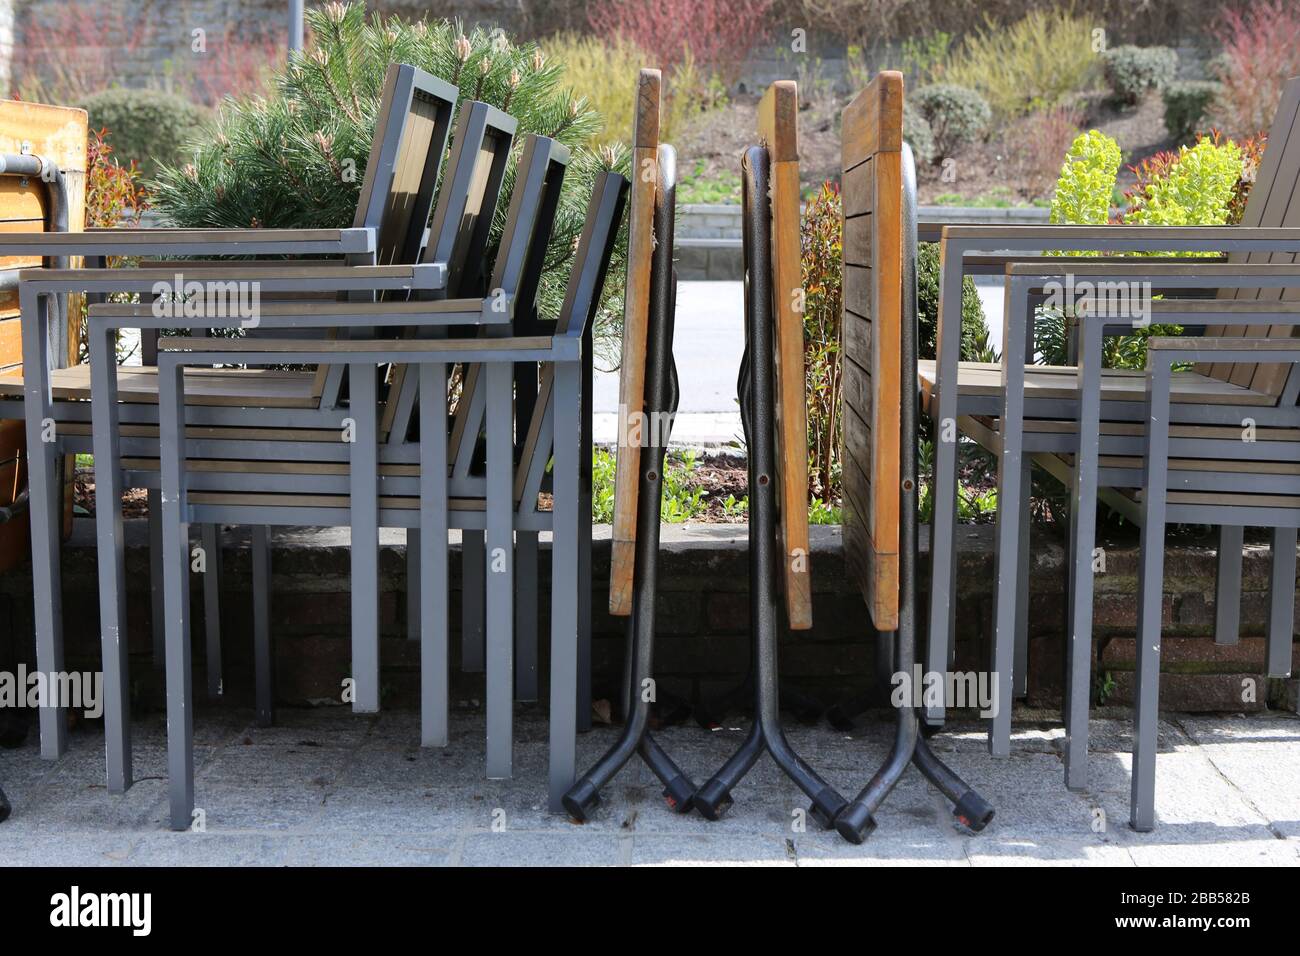 Chaises et tables alignées sur une terrasse d'un restaurant. Fermeture administrative. Coronavirus. Covid-19. Saint-Gervais-les-Bains. Haute-Savoie. Stock Photo